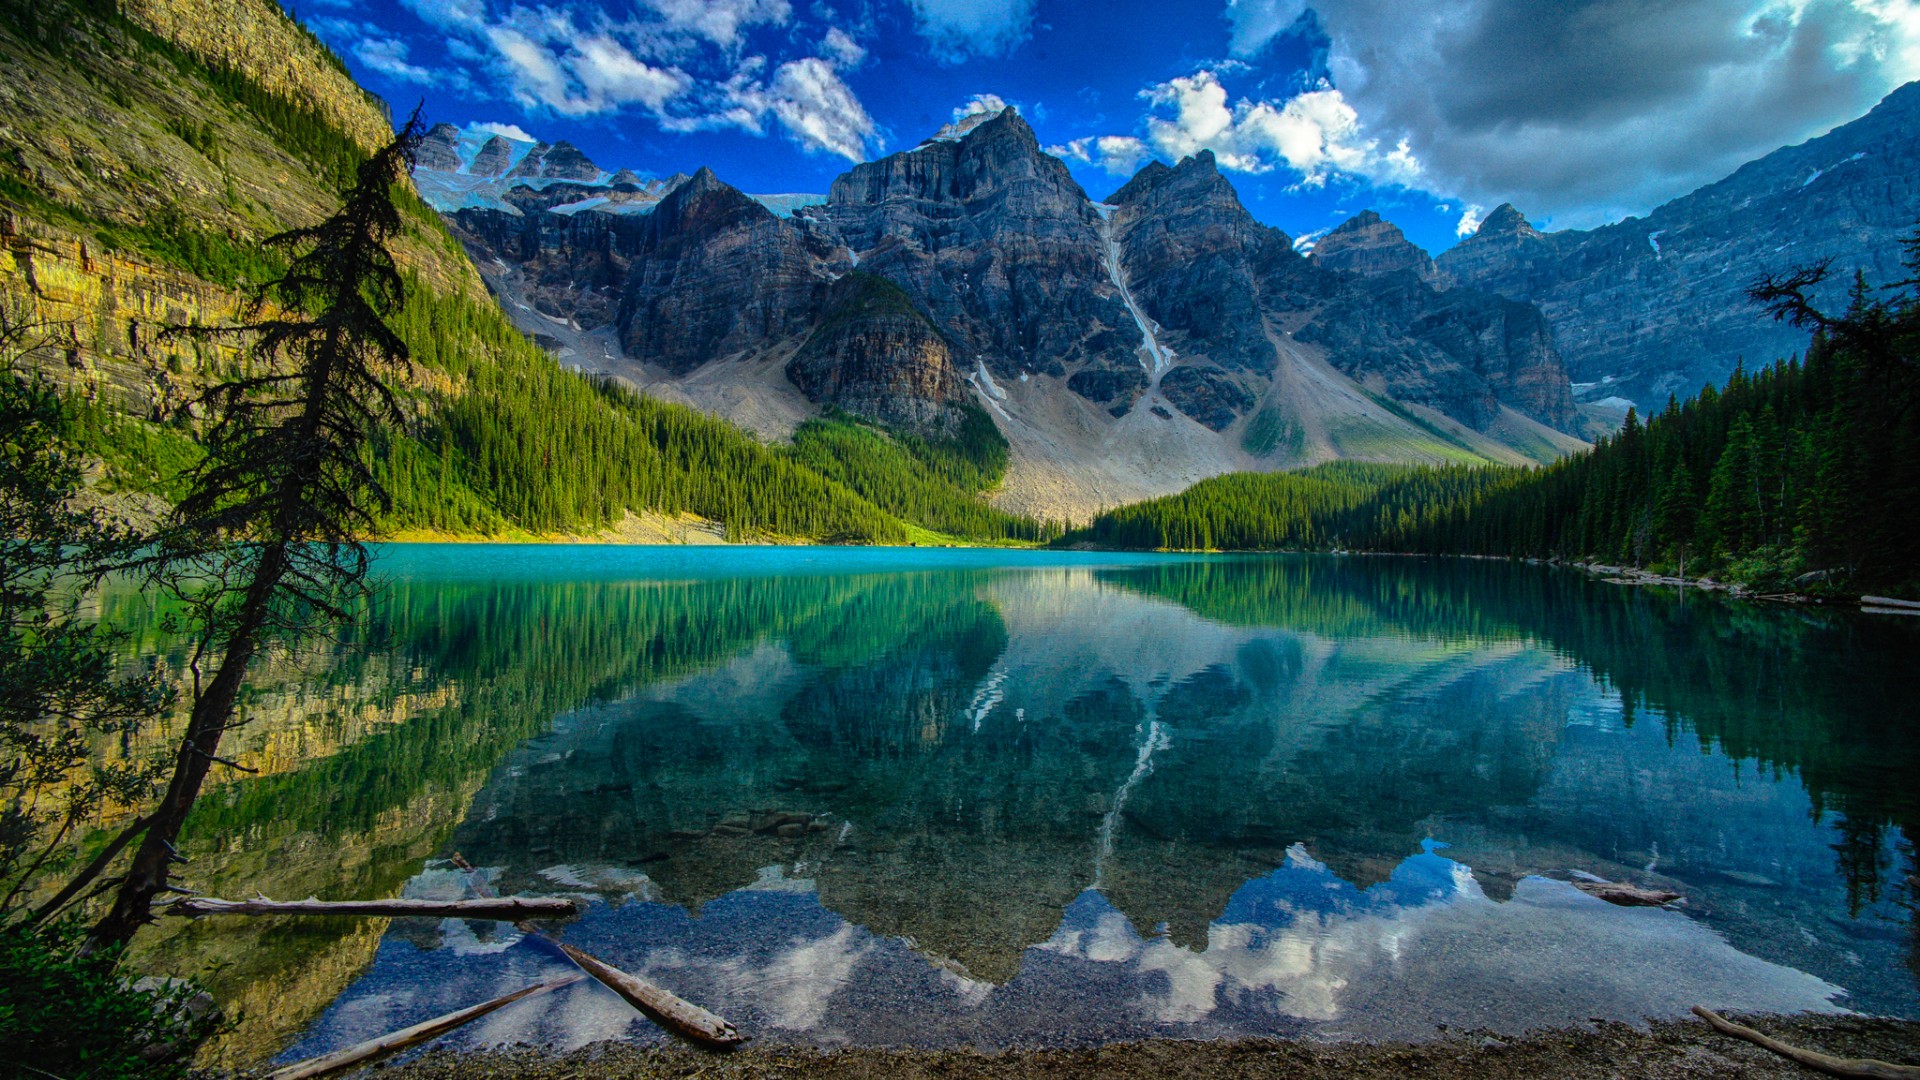 加拿大风景树木 山 湖水 自然风景图片桌面壁纸 风景壁纸 壁纸下载 彼岸桌面